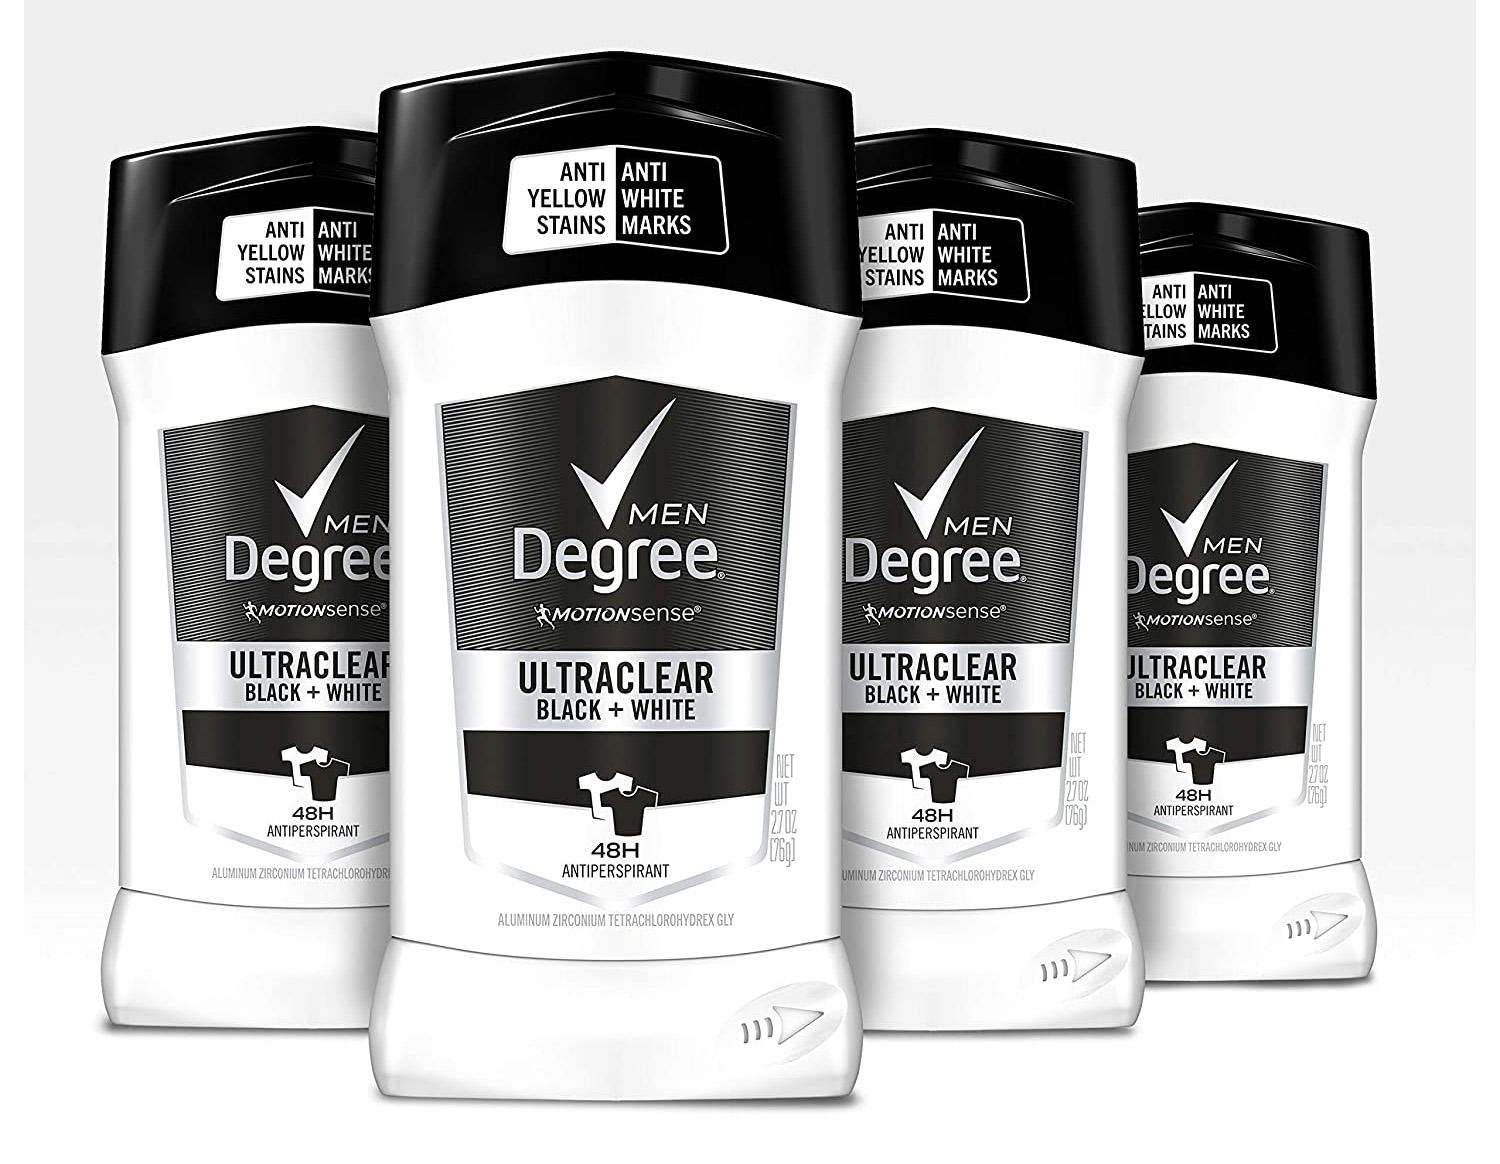 4 Degree Men MotionSense UltraClear Black White Deodorant for $10.44 Shipped